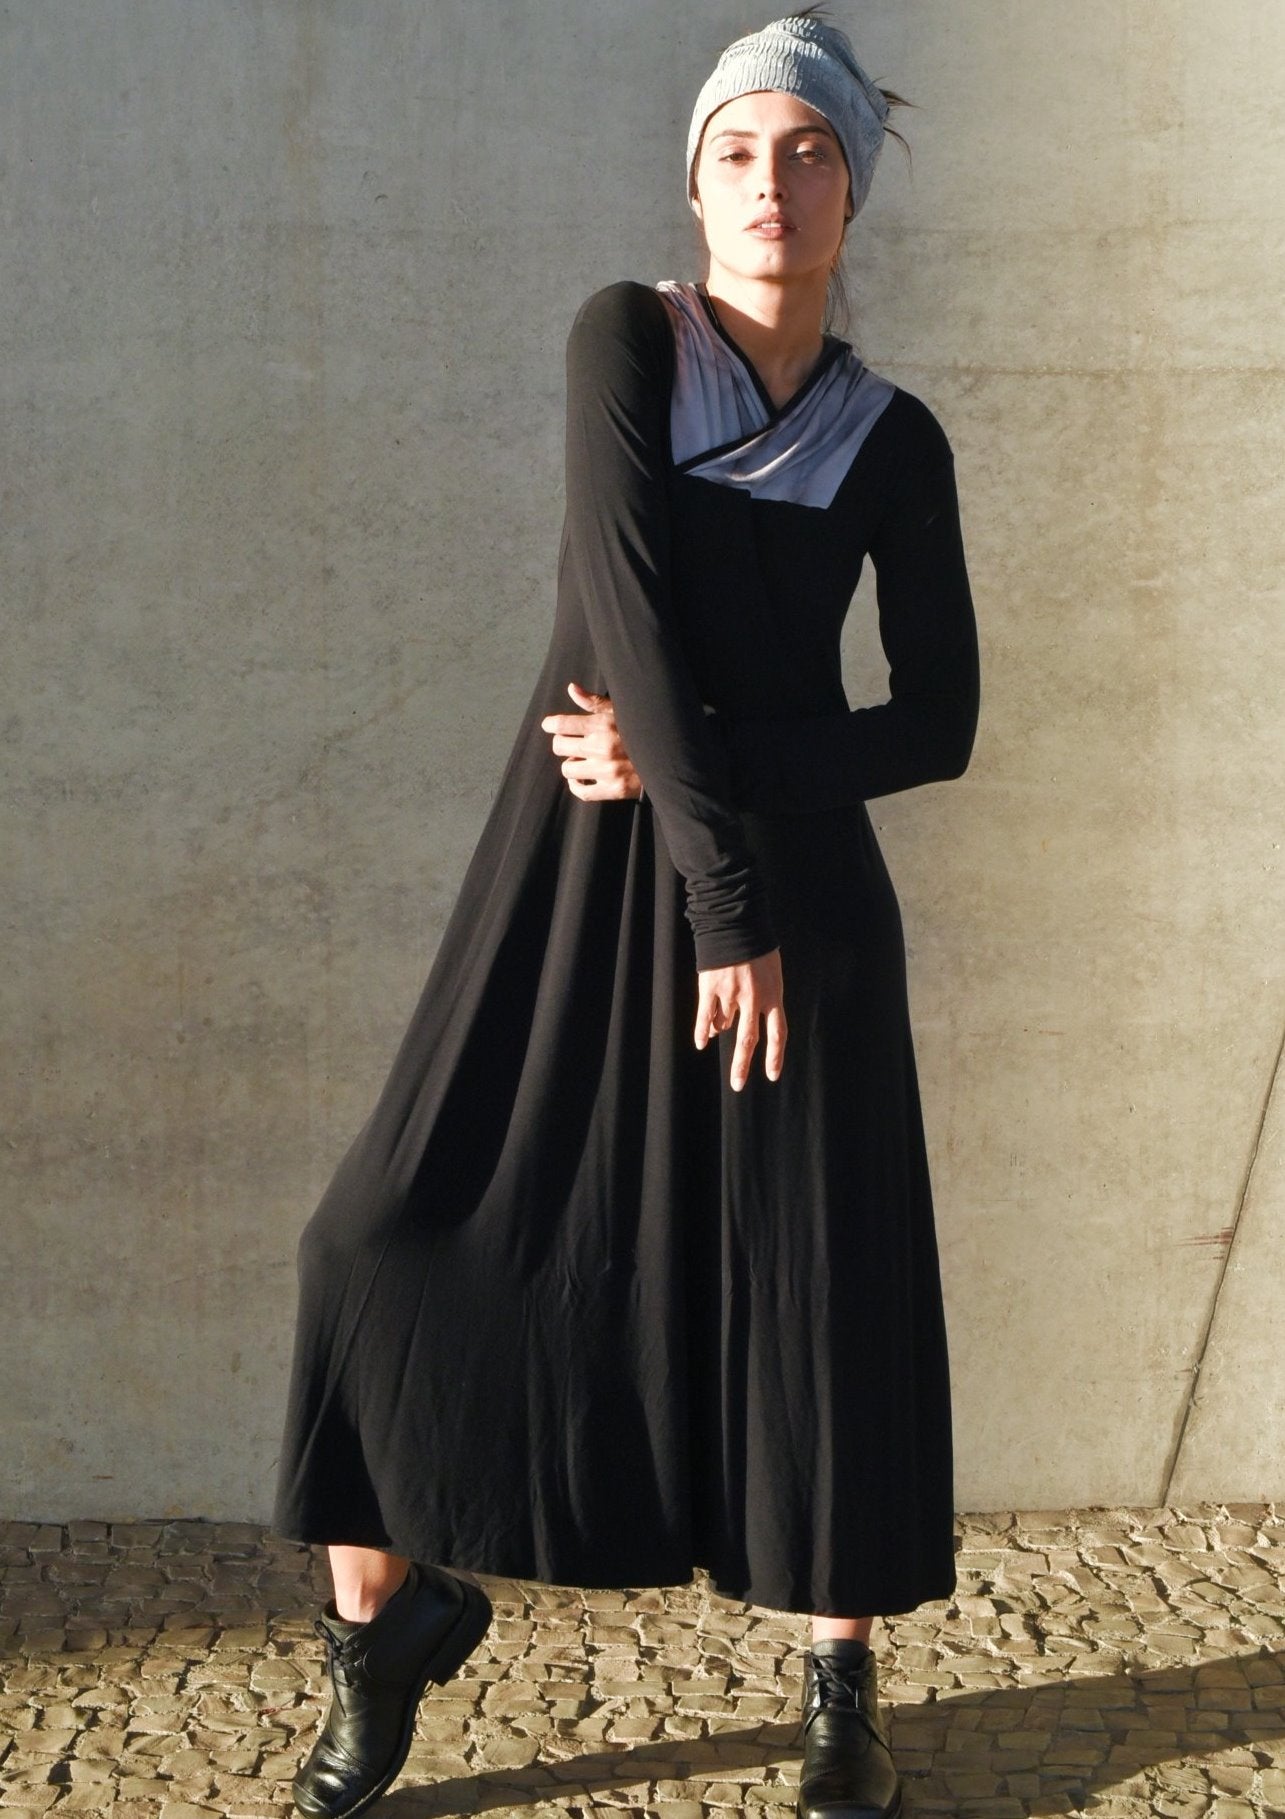 Vestido em fibra de bambu, extremamente confortavel, com capuz em tingimento tie-dye, mangas compridas /Cristina Cordeiro